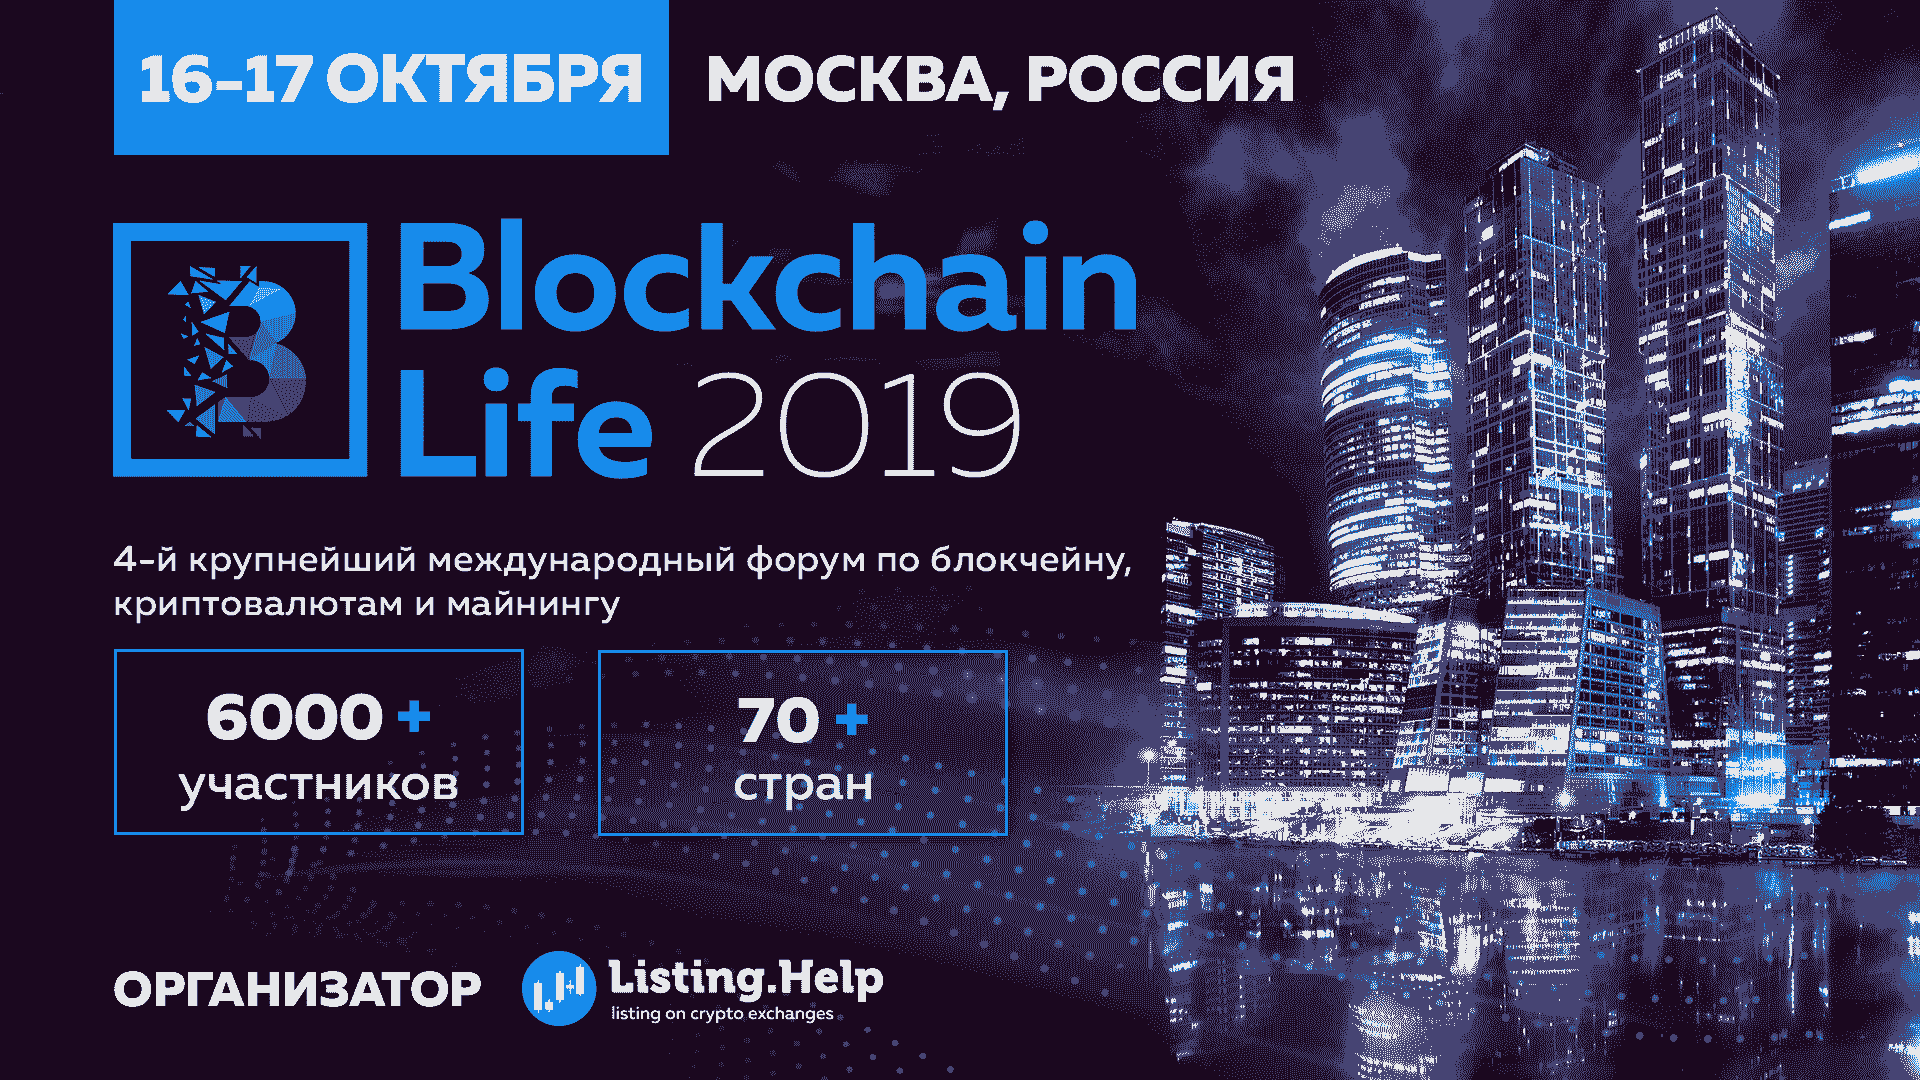 Microsoft, Huawei и представители Венесуэлы на Blockchain Life 2019 в Москве 16-17 октября